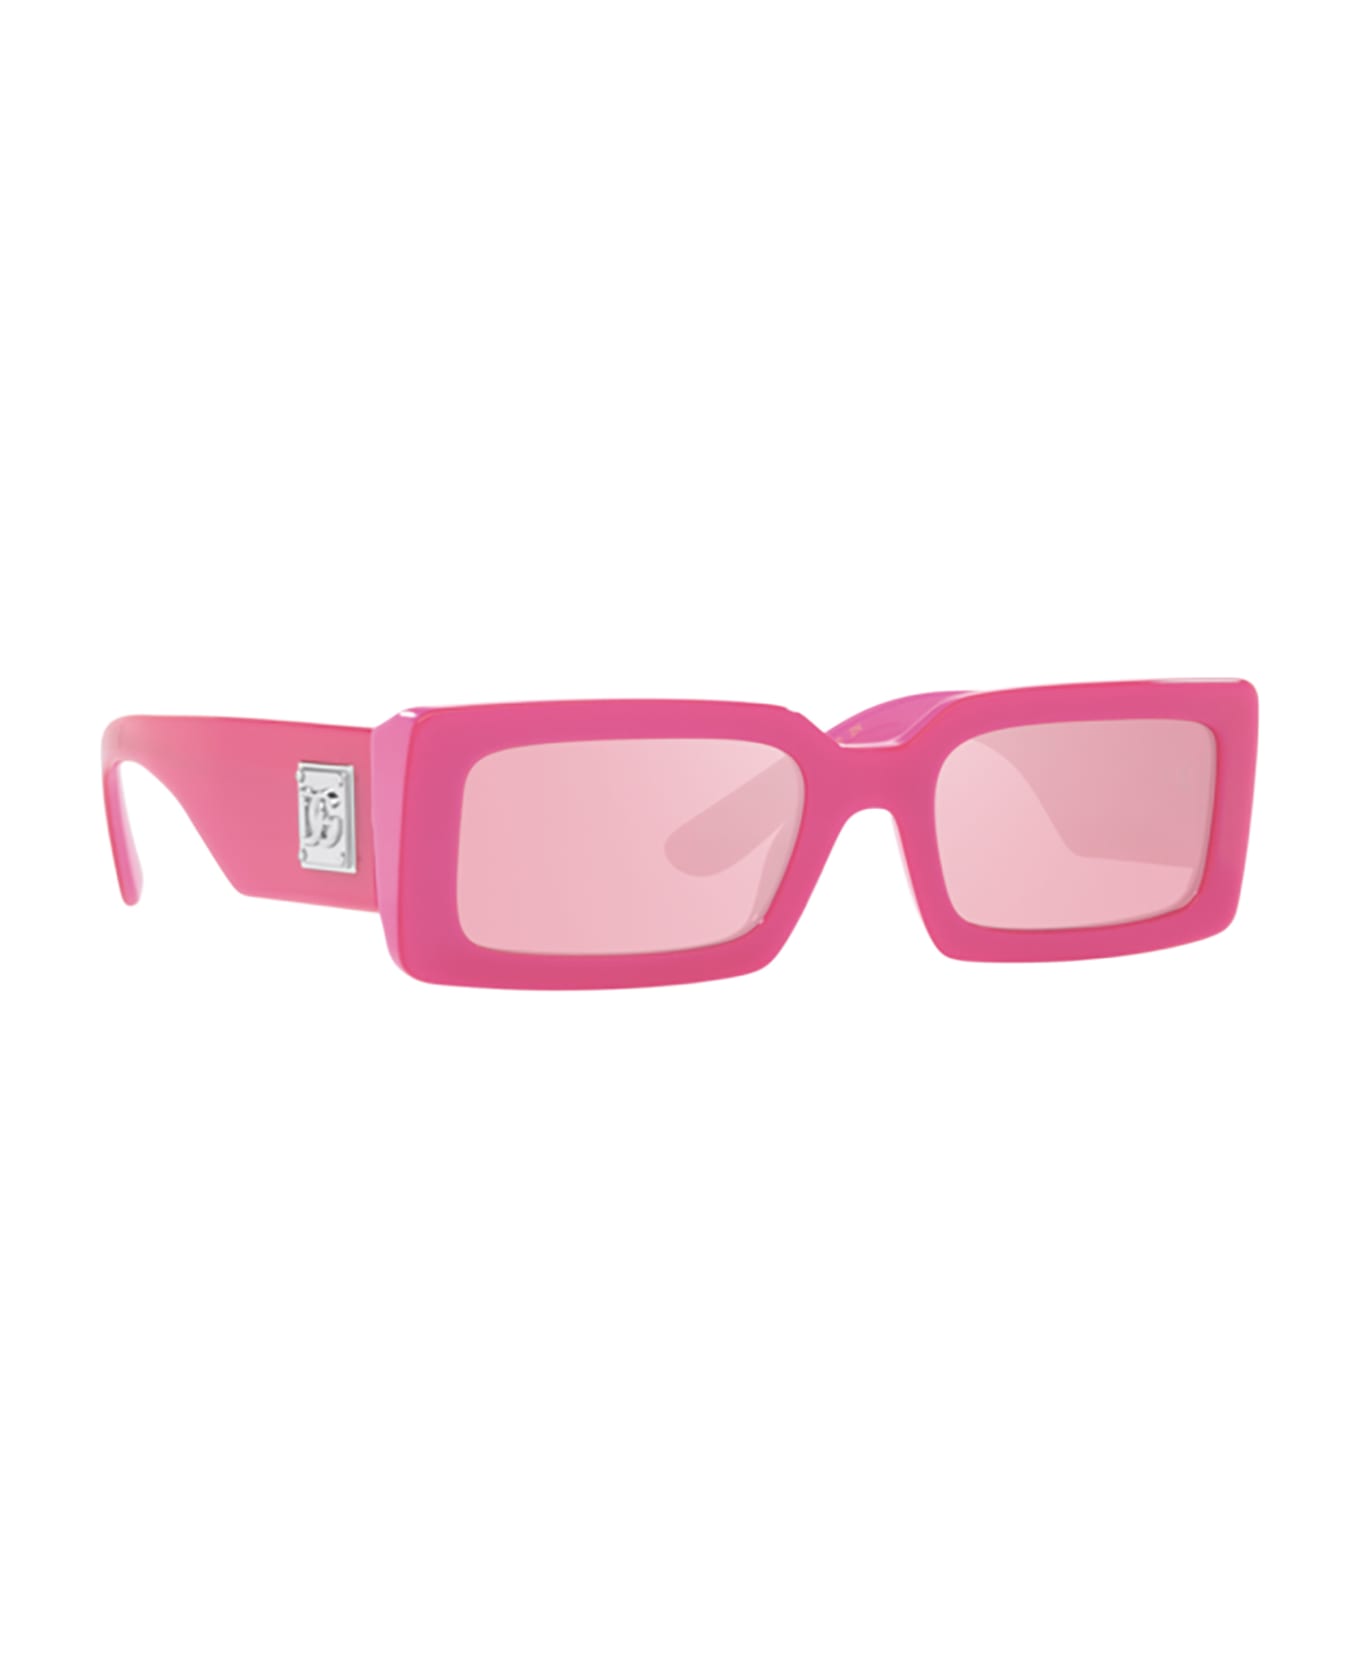 Dolce & Gabbana Eyewear Dg4416 Metallic Pink Sunglasses - Metallic Pink